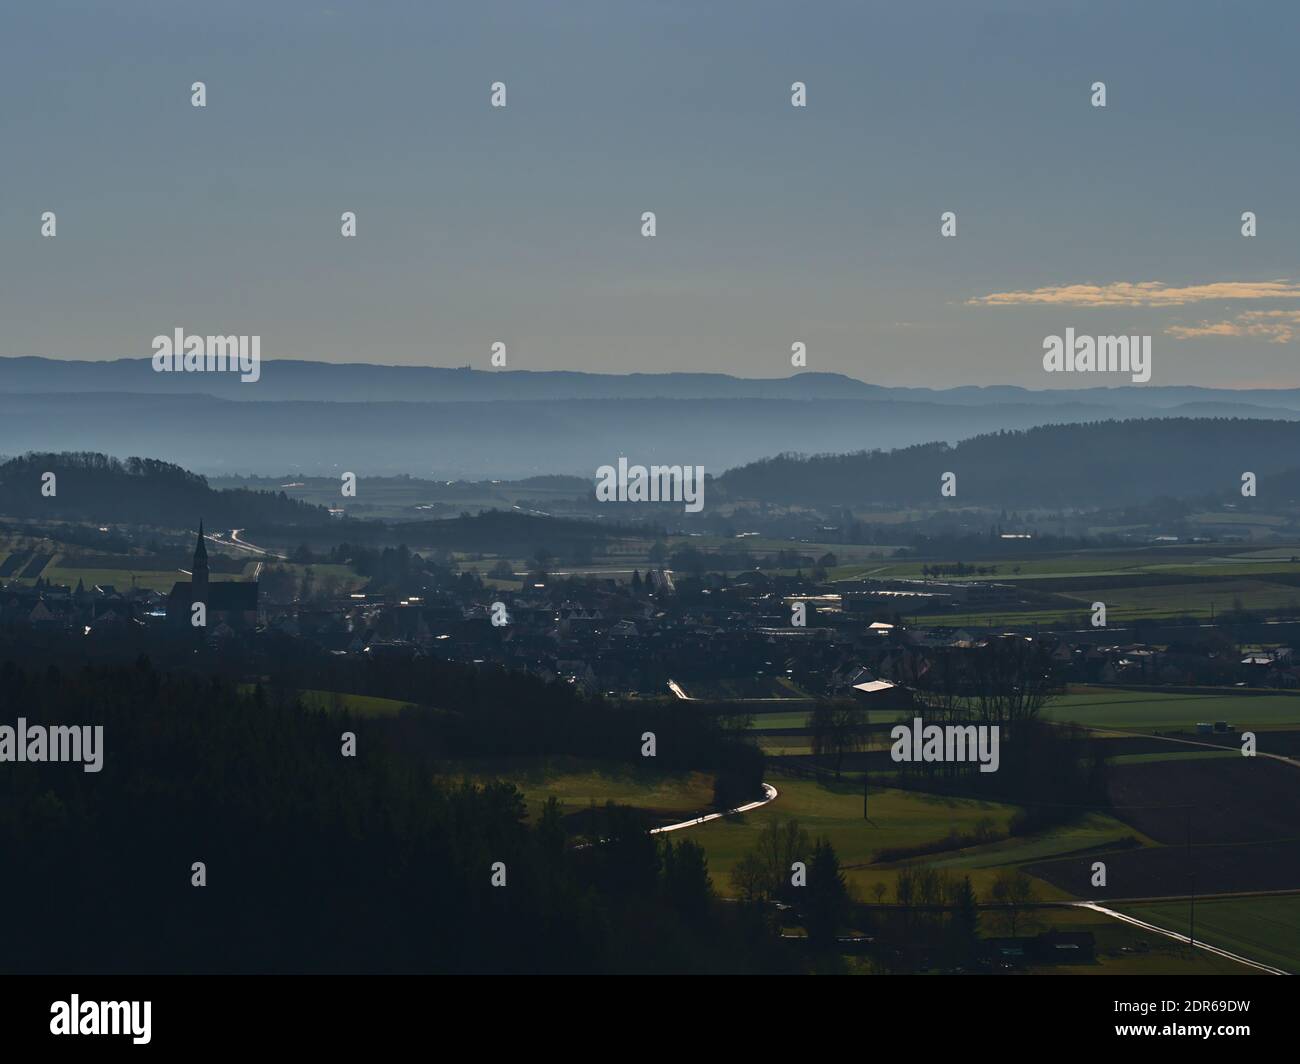 Luftpanorama des kleinen Dorfes Ammerbuch am Fuße des Schönbuchwaldes in Baden-Württemberg, Deutschland mit niedriger Gebirgskette Schwäbische Alb. Stockfoto